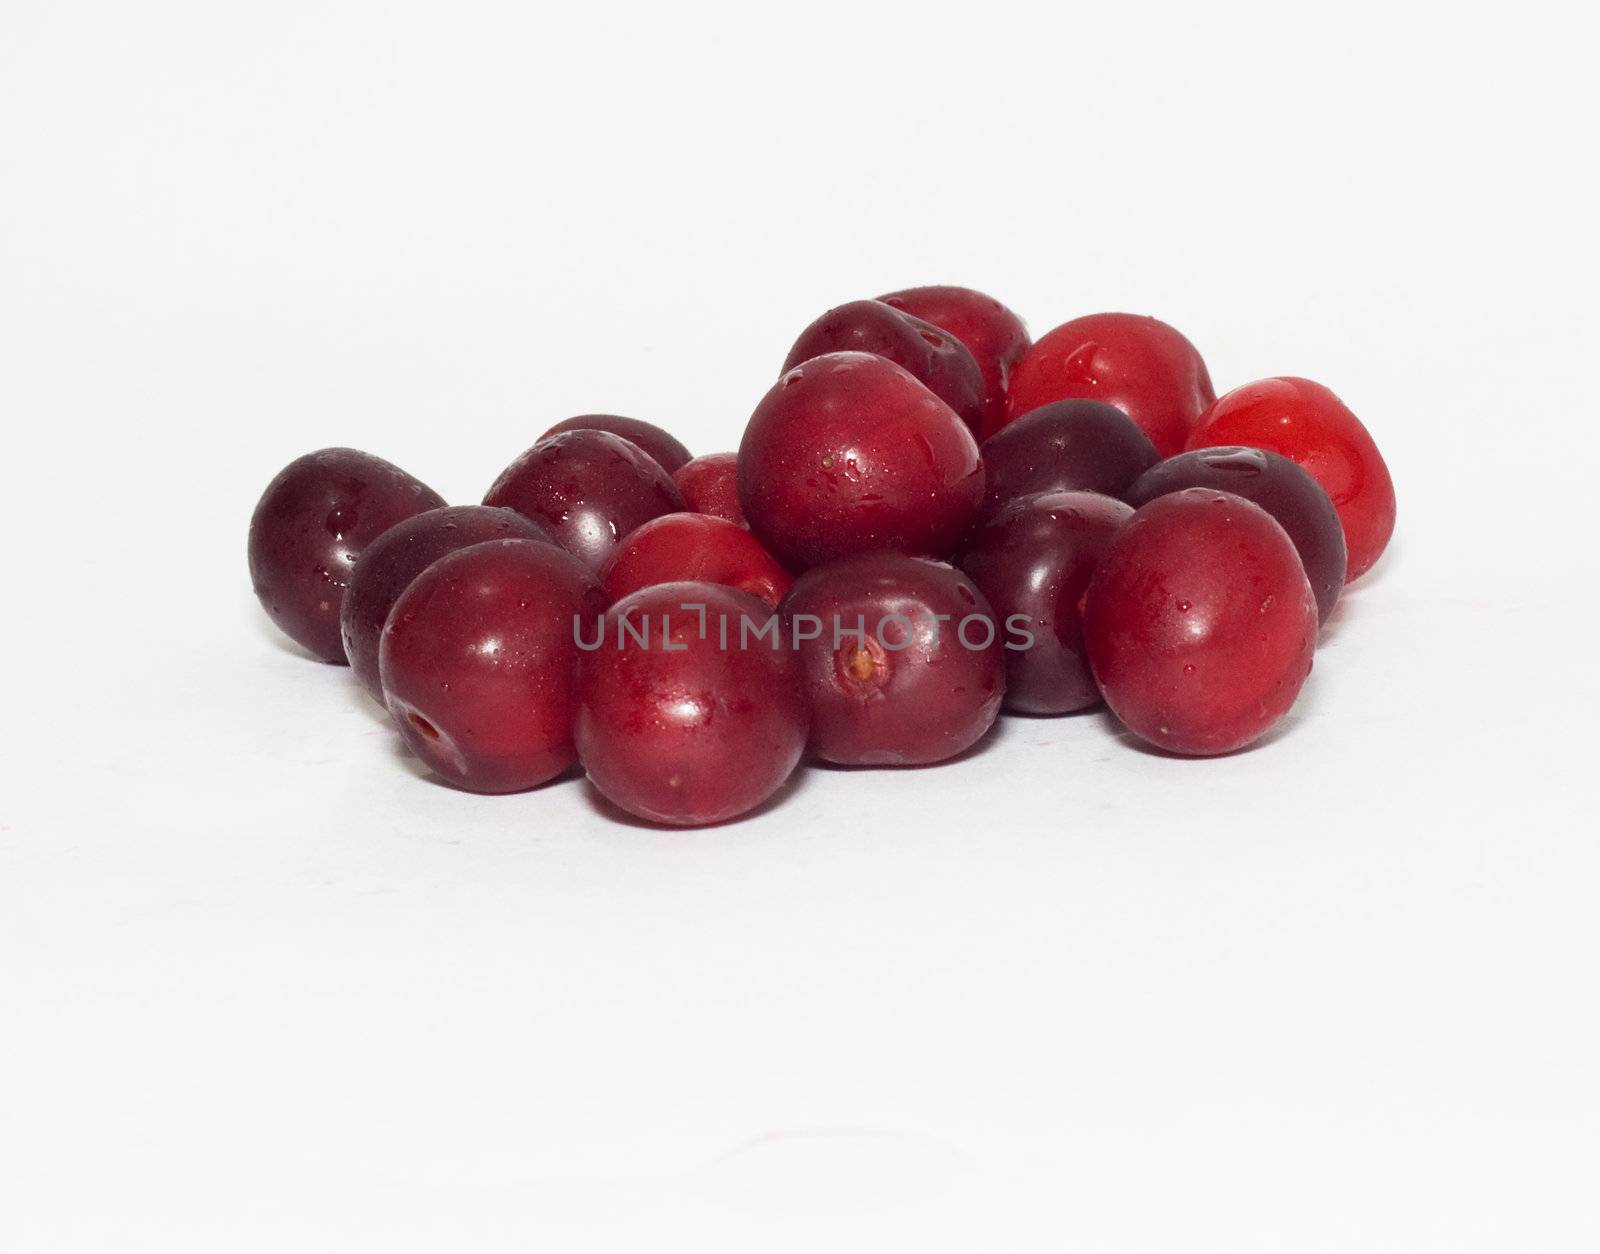 cherries on white background  by schankz